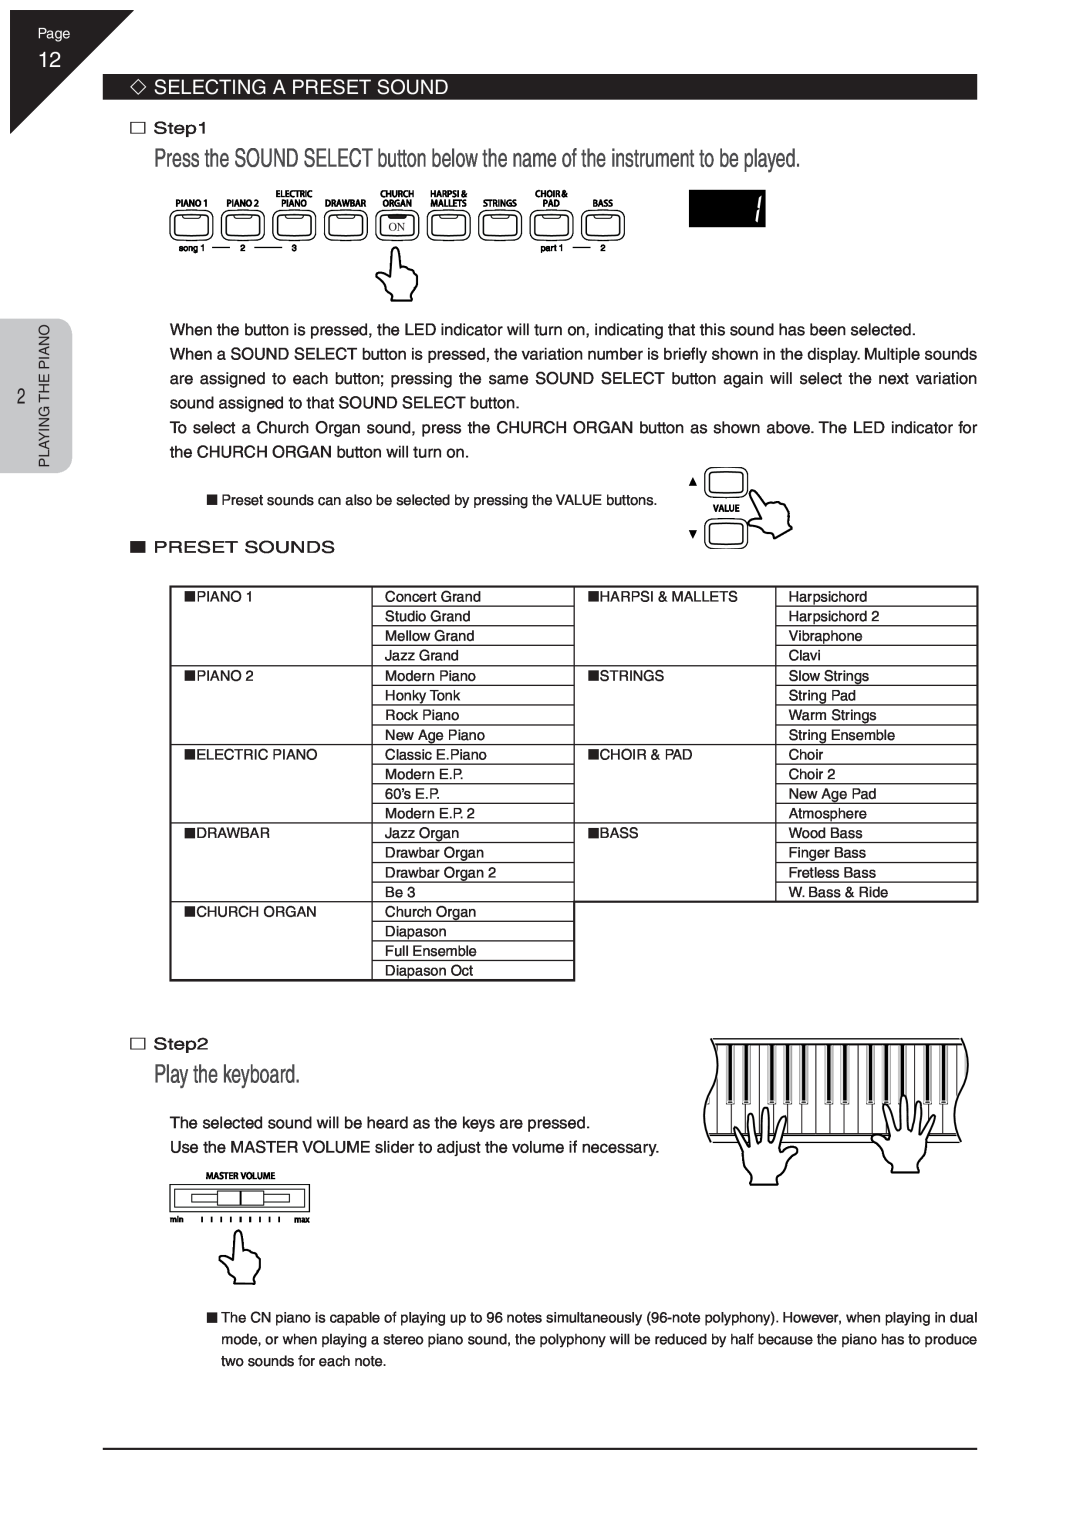 Kawai CN31 manual Play the keyboard, ‘ Selecting A Preset Sound 